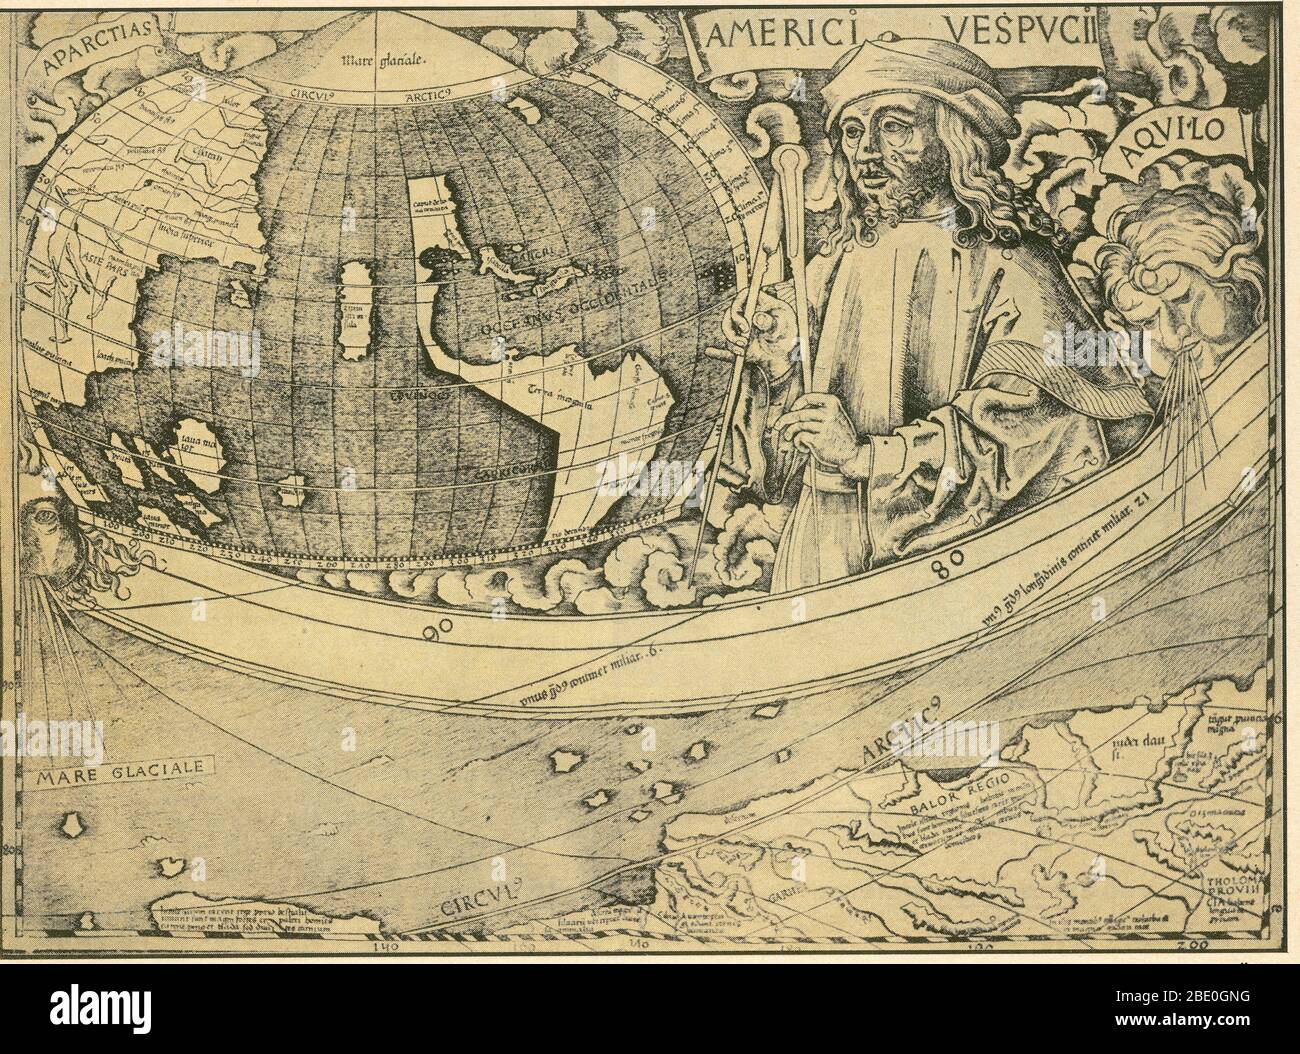 Vespucci gazes au Nouveau monde dans un panneau de 1507 carte de Martin Waldapparent. Amerigo Vespucci (9 mars 1454 - 22 février 1512) était un explorateur, navigateur et cartographe italien. Vespucci a participé en qualité d'observateur à plusieurs voyages qui ont exploré la côte est de l'Amérique du Sud entre 1499 et 1502. Lors de la première de ces voyages, il était à bord du navire qui a découvert que l'Amérique du Sud s'étendait plus au sud que prévu auparavant. Les expéditions sont devenues largement connues en Europe après la publication de deux comptes attribués à Vespucci entre les deux. En 1507, Martin Waldapparent produisit un monde m Banque D'Images